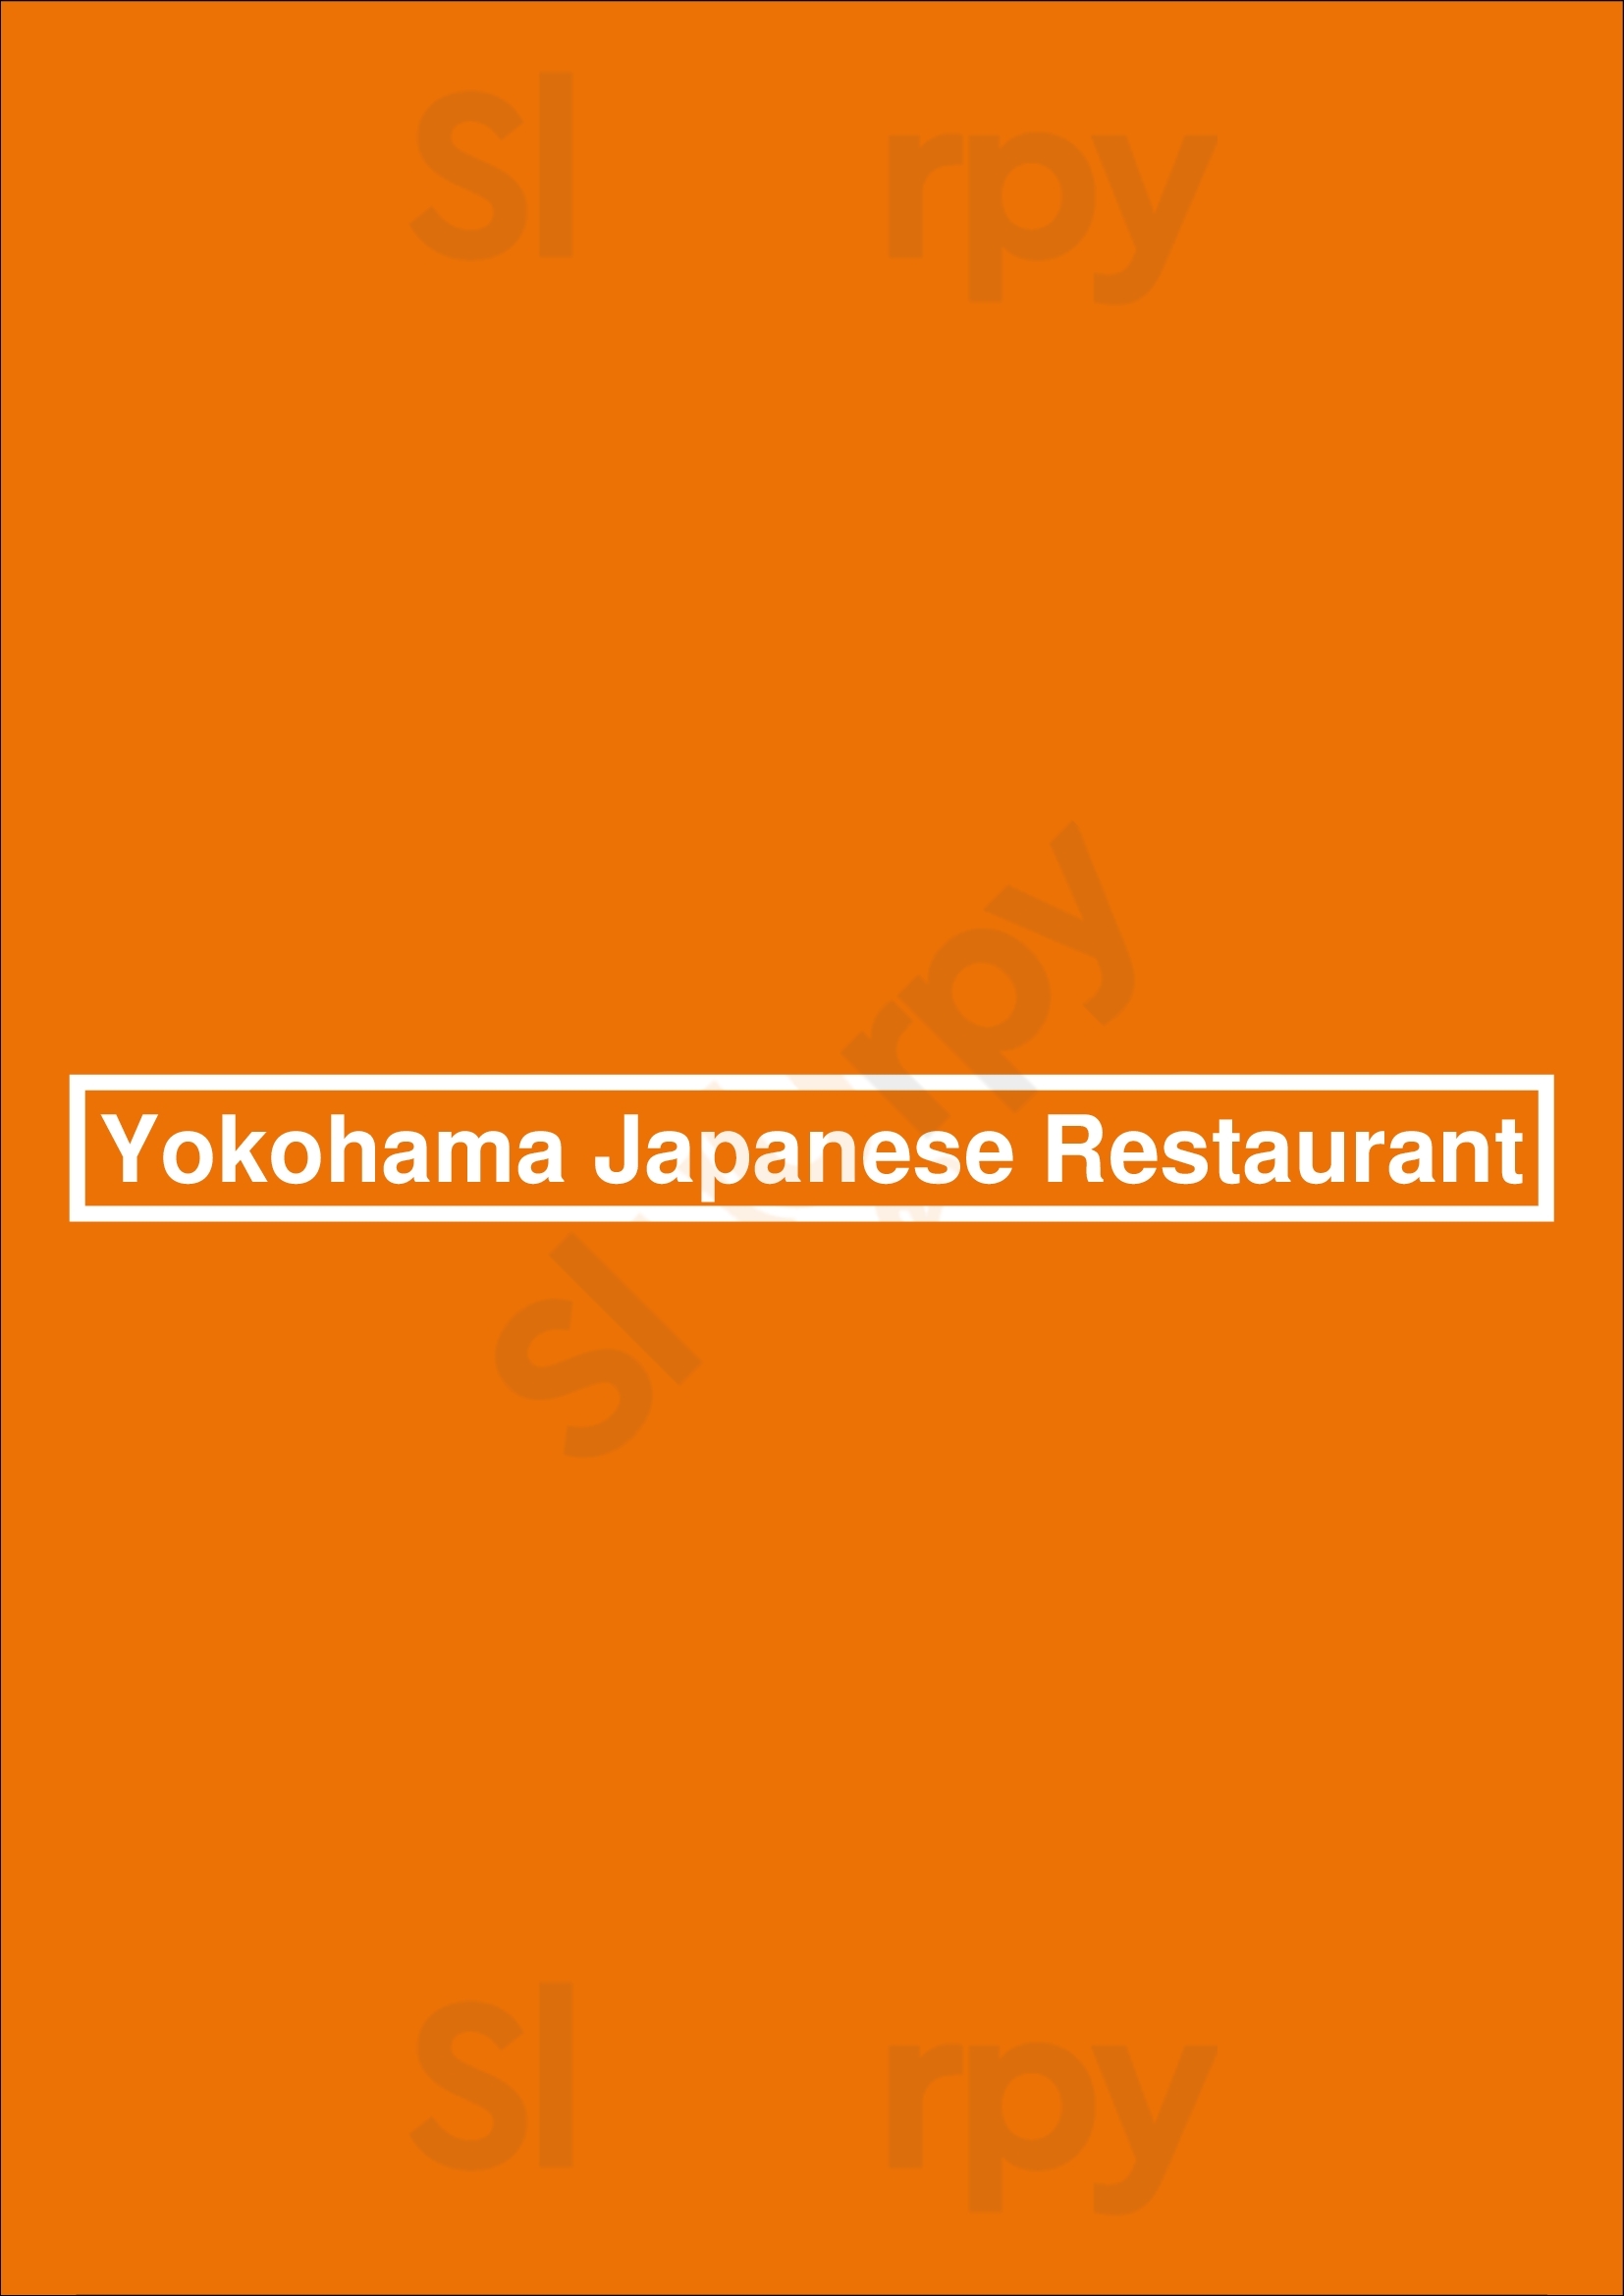 Yokohama Japanese Restaurant Richmond Menu - 1